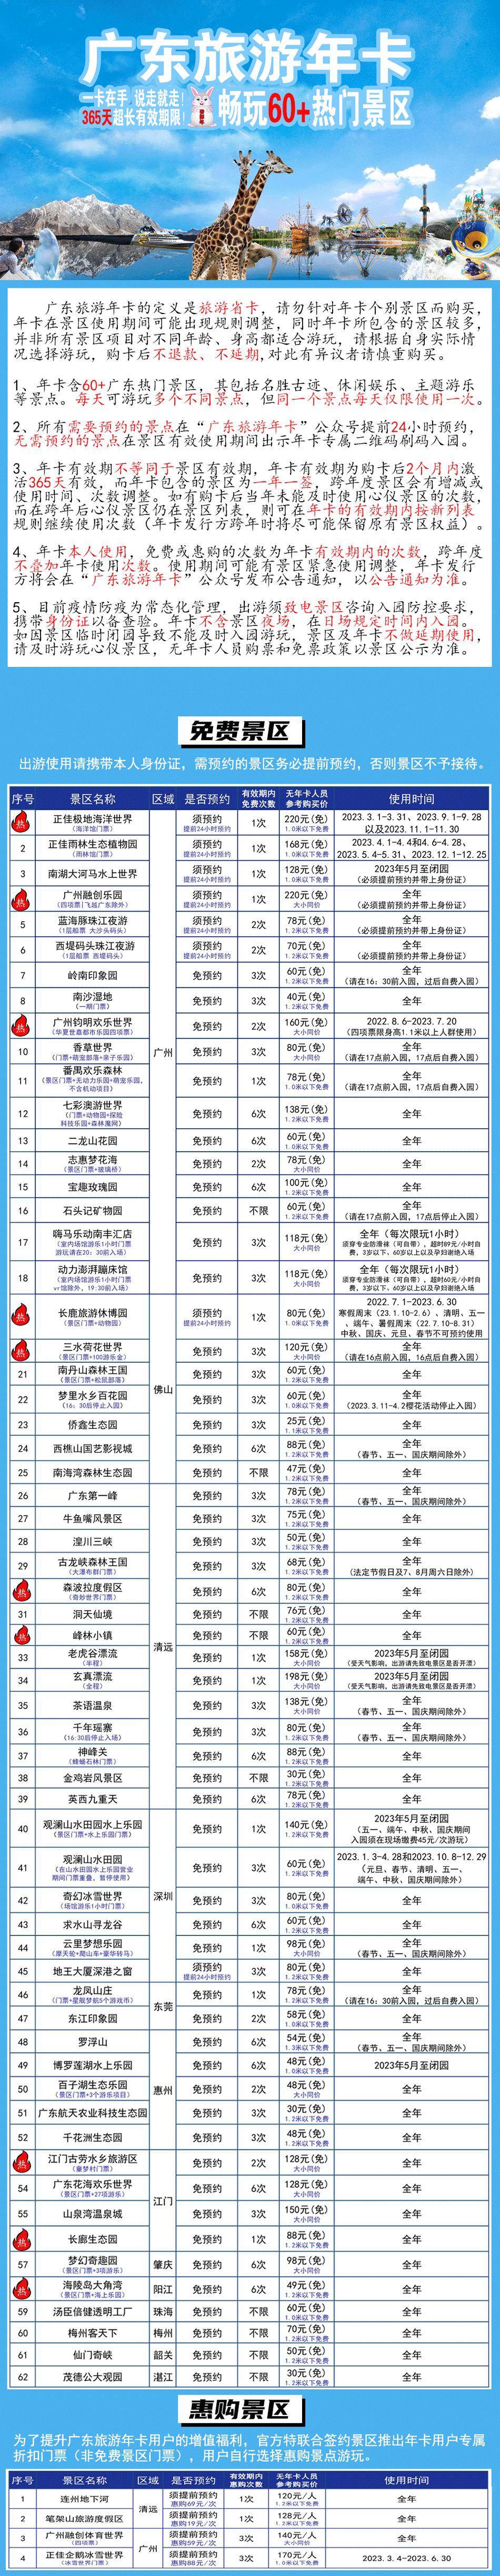 【爆款】198元抢广东旅游年卡，畅玩60+热门景区